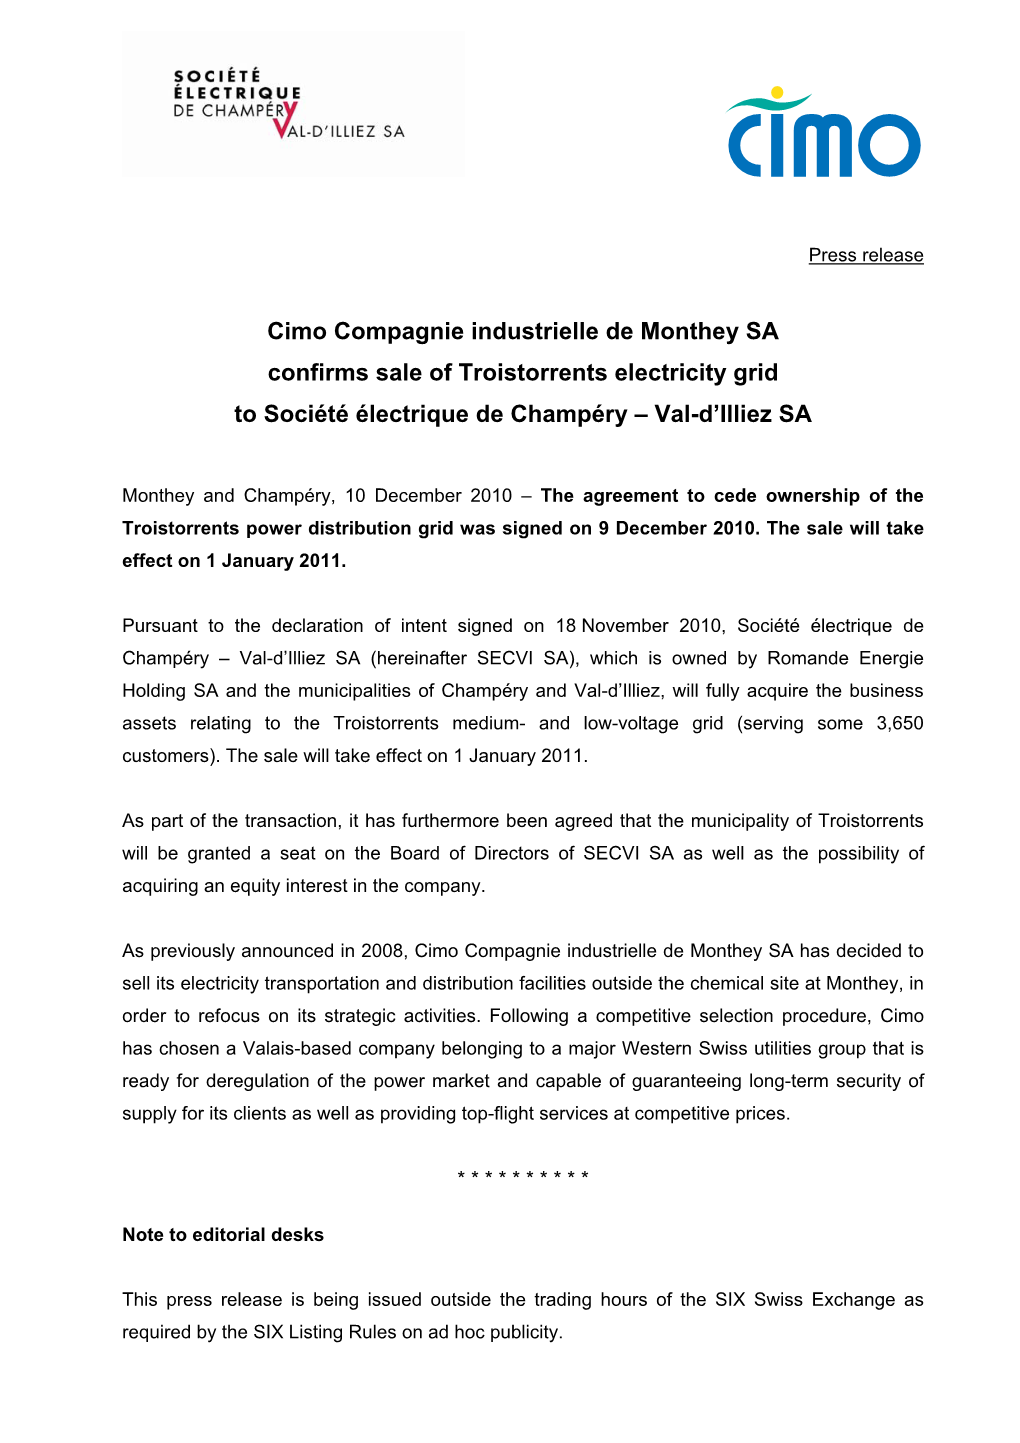 Cimo Compagnie Industrielle De Monthey SA Confirms Sale of Troistorrents Electricity Grid to Société Électrique De Champéry – Val-D’Illiez SA